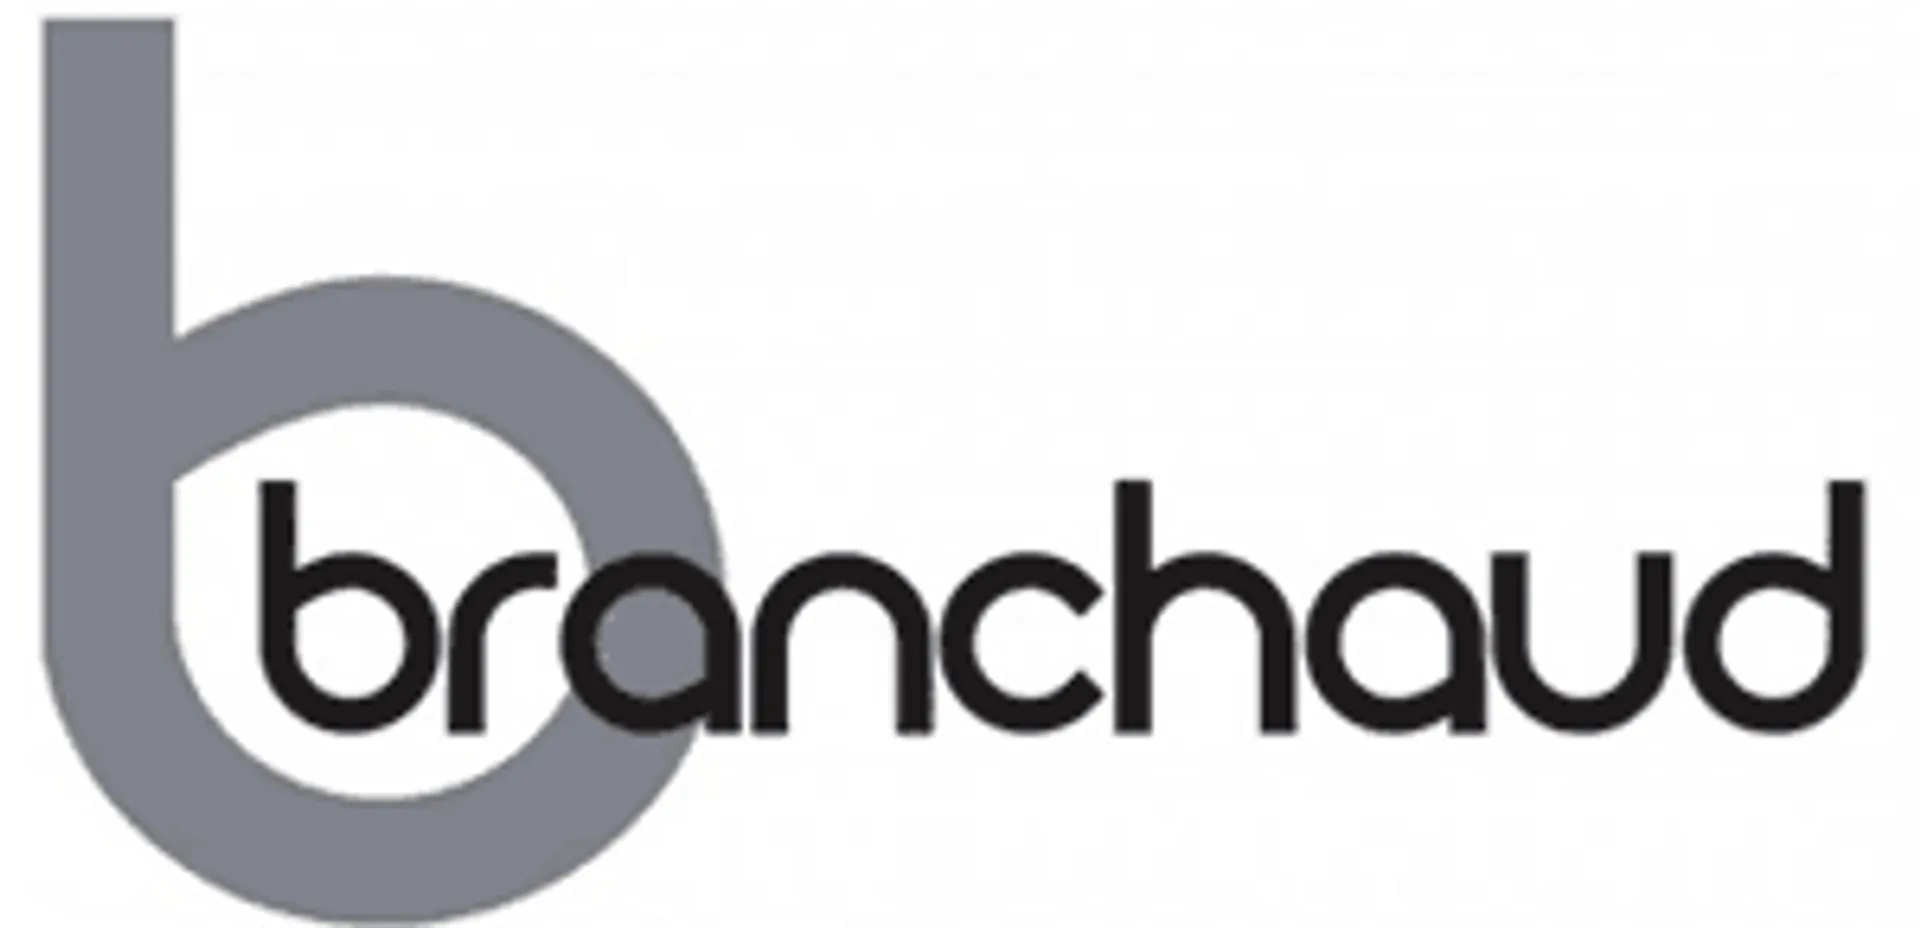 BRANCHAUD logo de circulaire